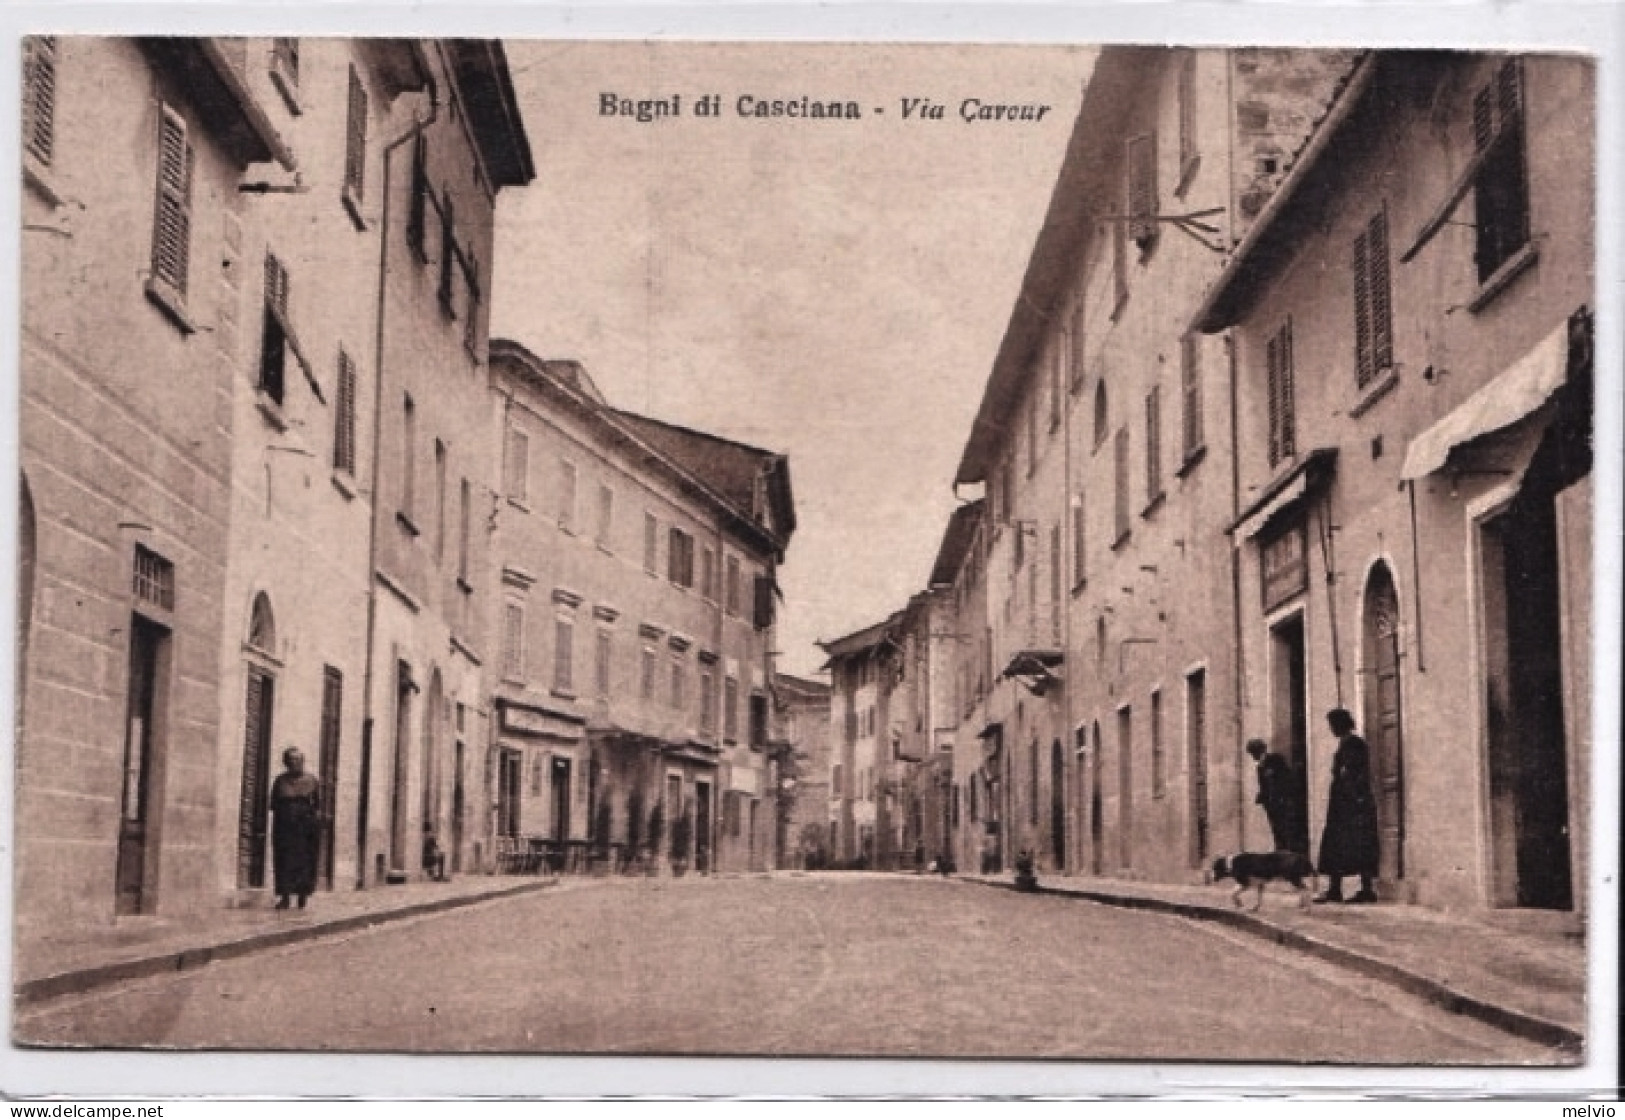 1927-Bagni Di Casciana (Pisa) Via Cavour - Pisa